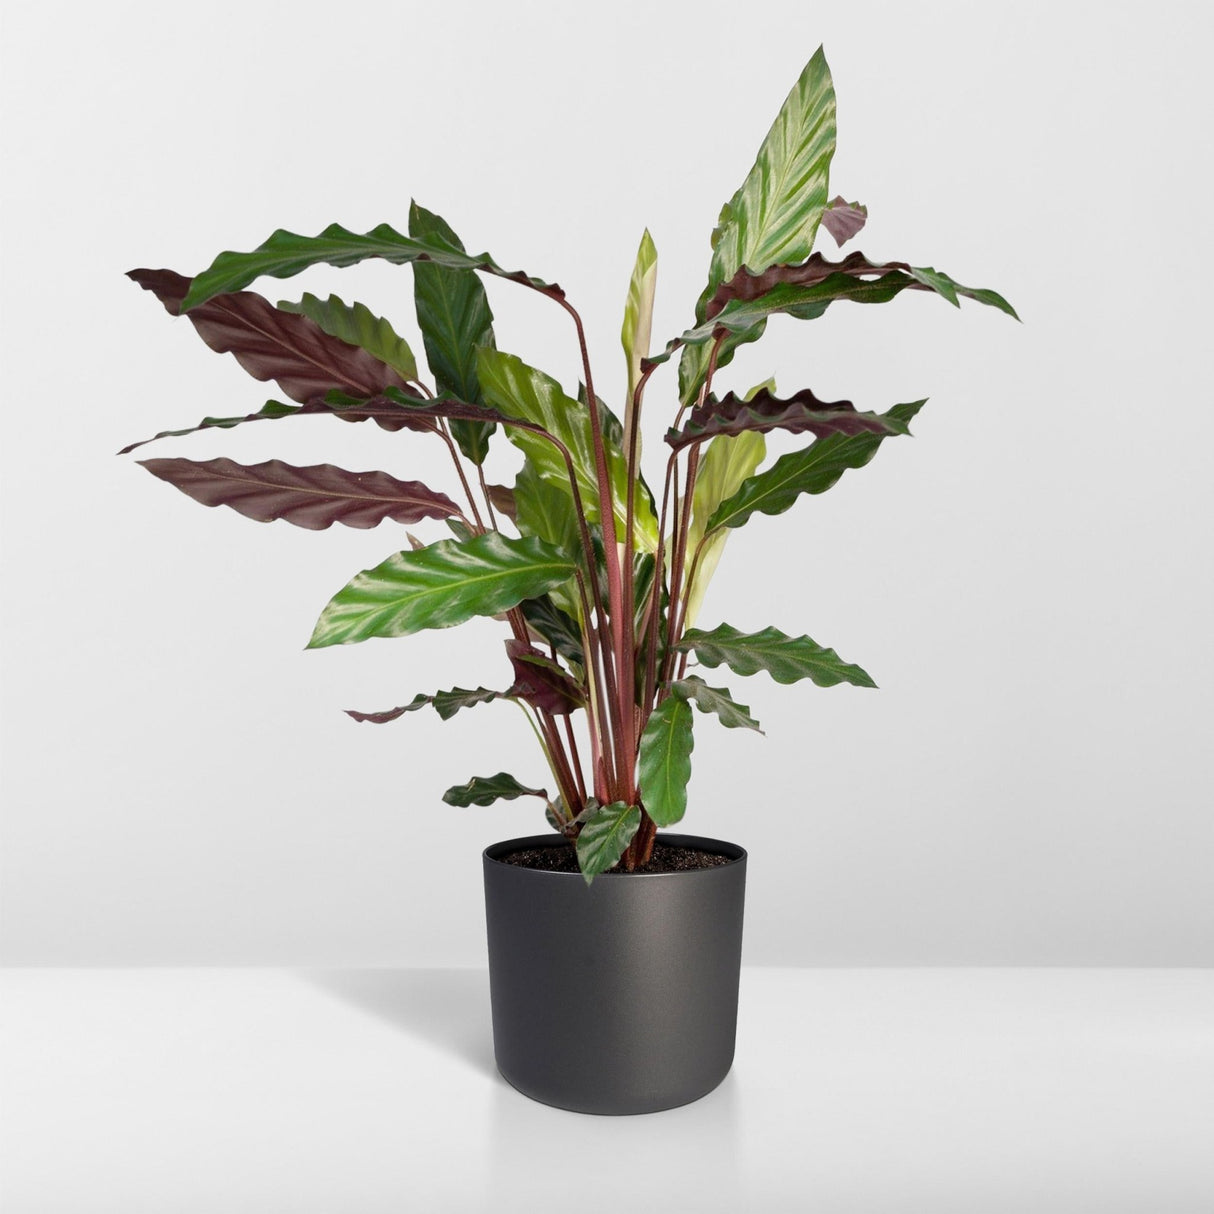 Livraison plante - Calathea rufibarba - h50cm, Ø14 - plante d'intérieur